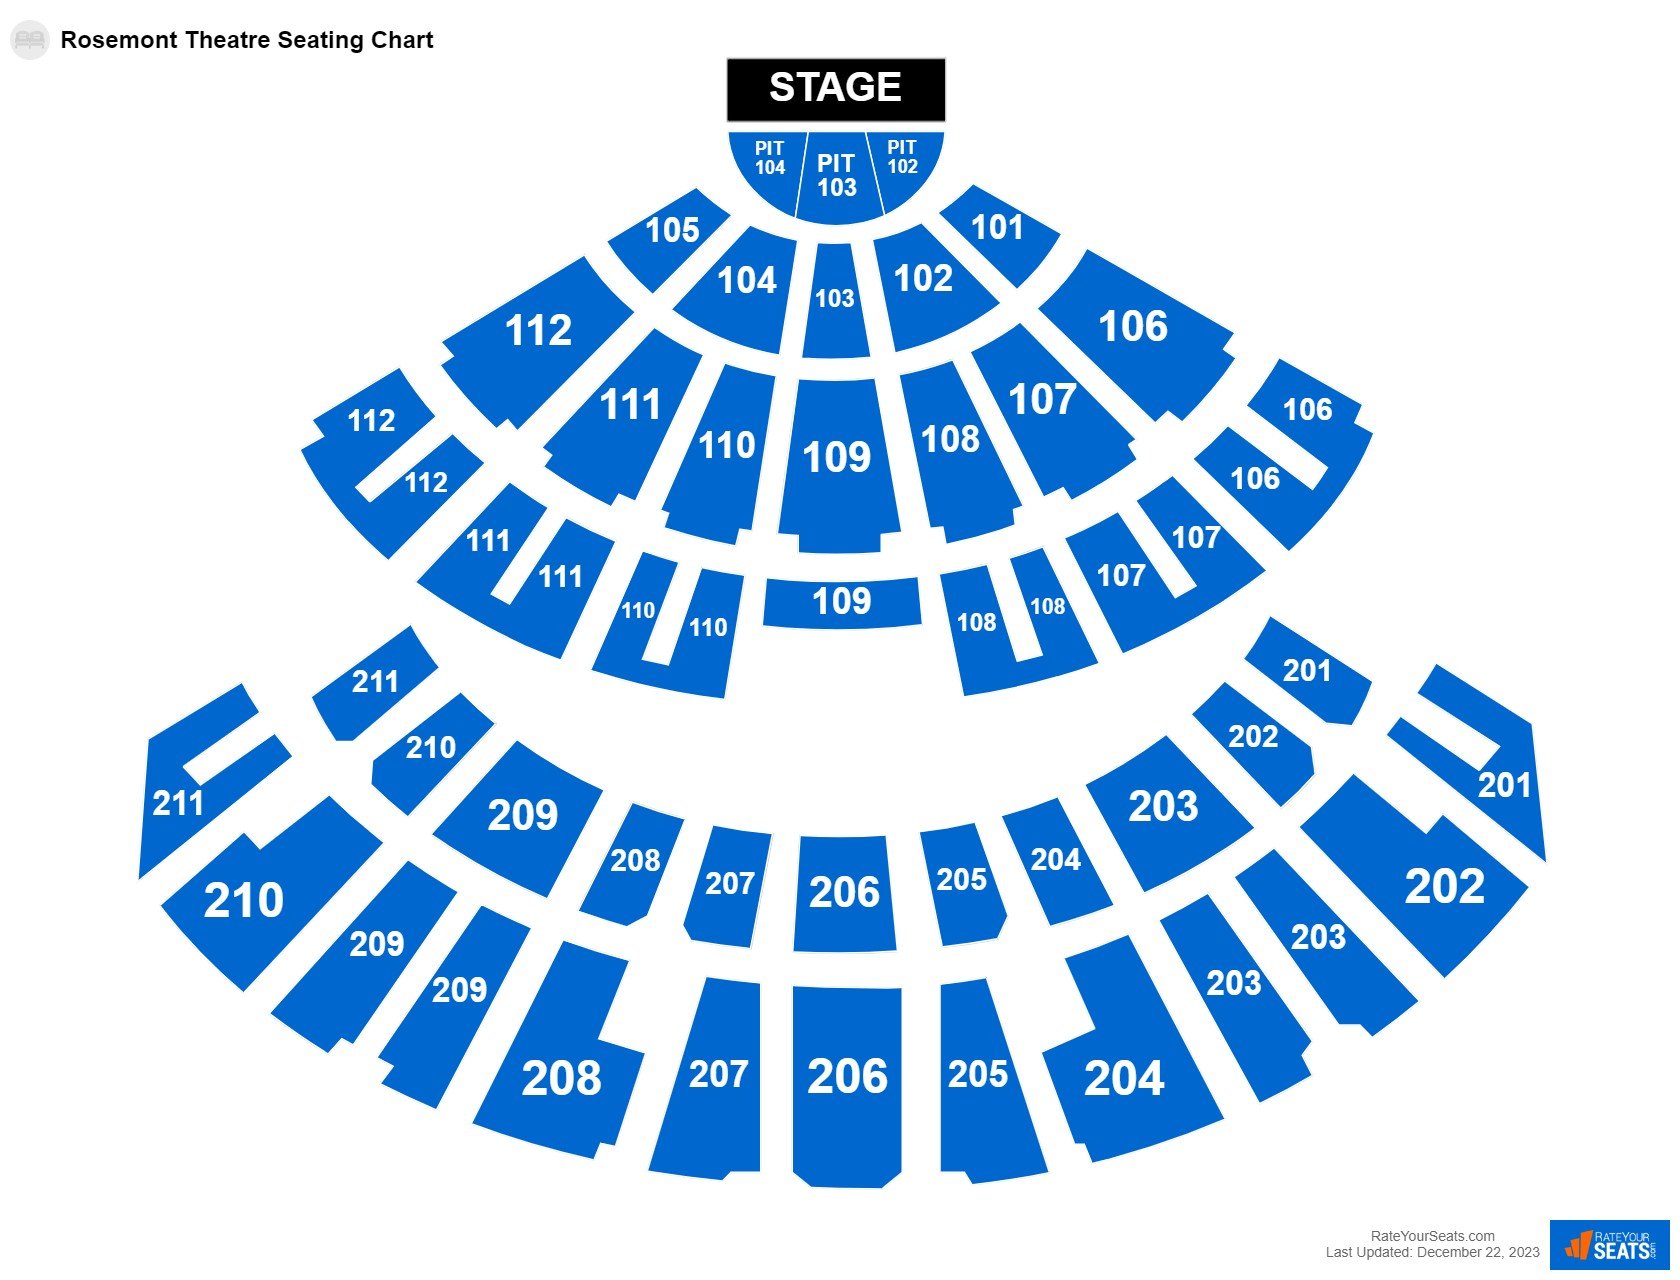 Rosemont Theatre Seating Chart Rateyourseats Com